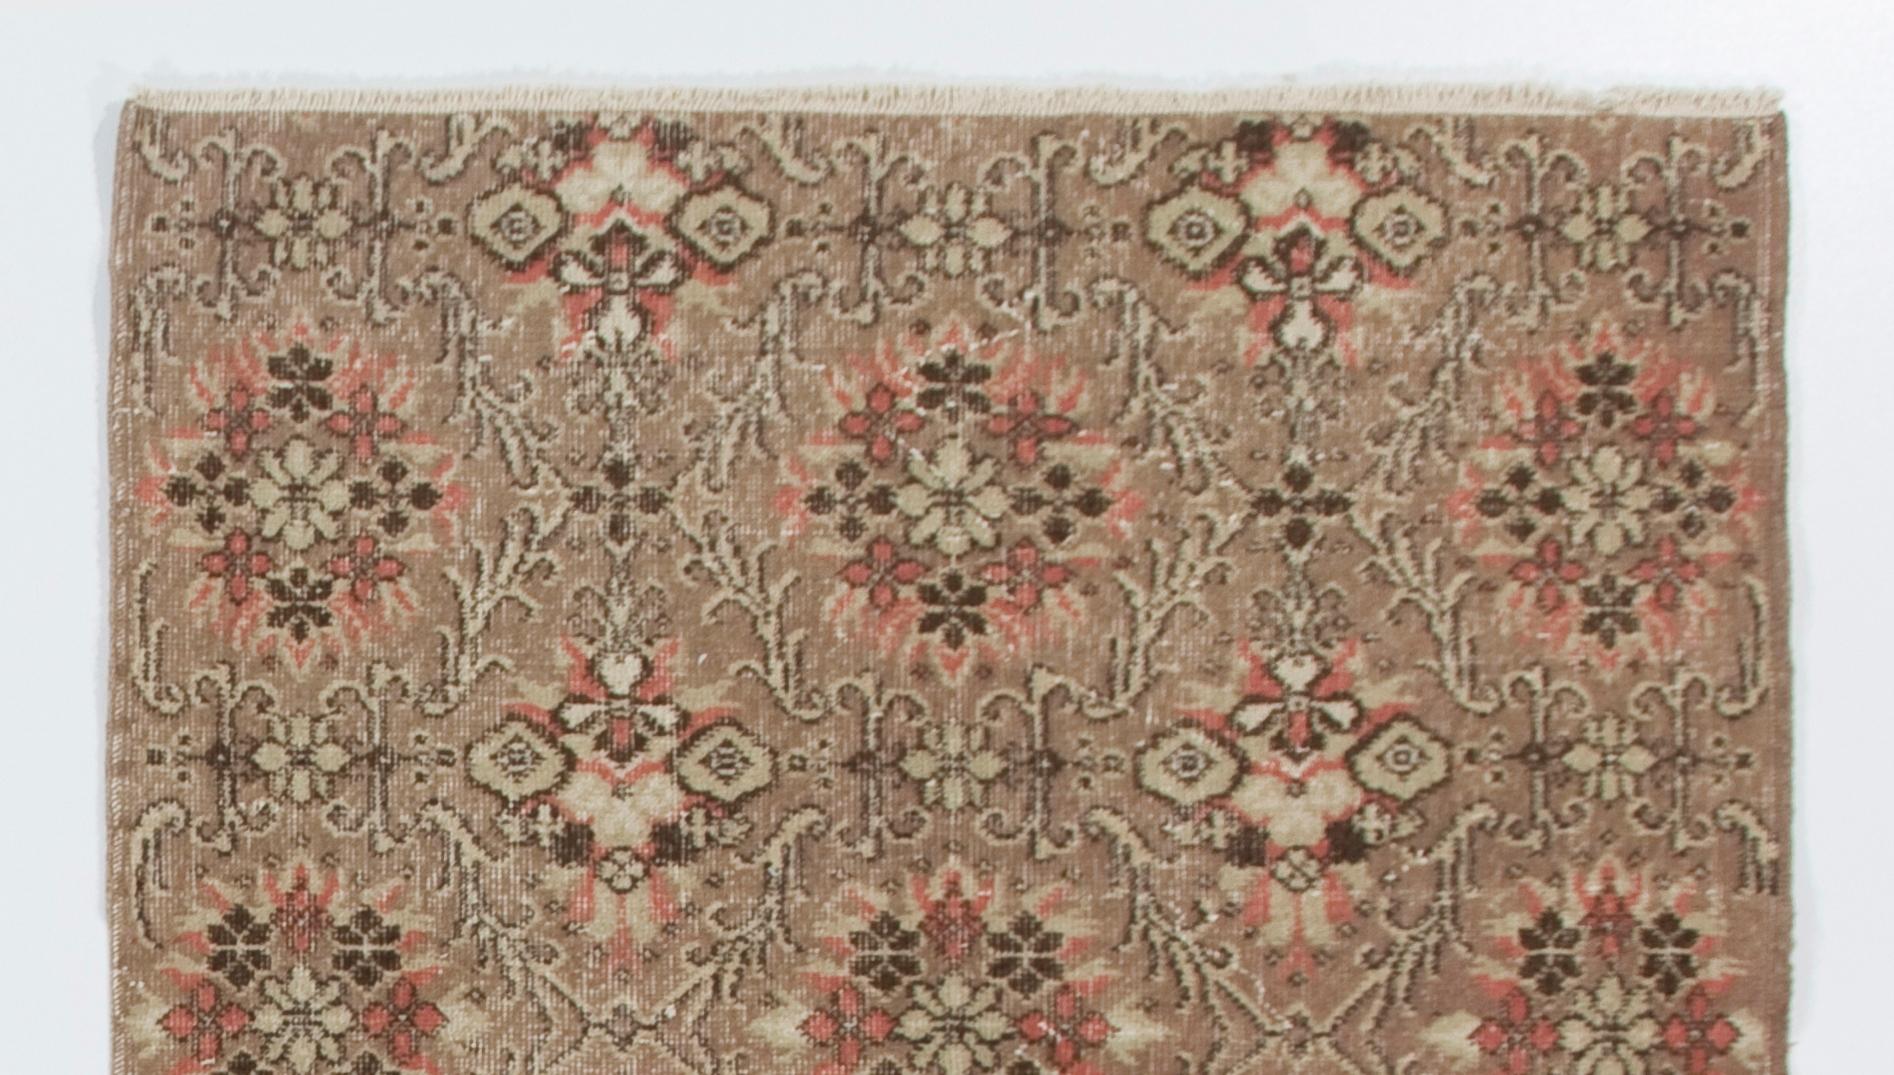 Dieser handgeknüpfte türkische Vintage-Teppich stammt aus den 1960er Jahren. Es zeichnet sich durch ein florales Gittermuster in Korallenrosa und Taupe aus. Er hat einen mittleren Wollflor auf Baumwollbasis, ist in gutem Zustand, robust und sauber